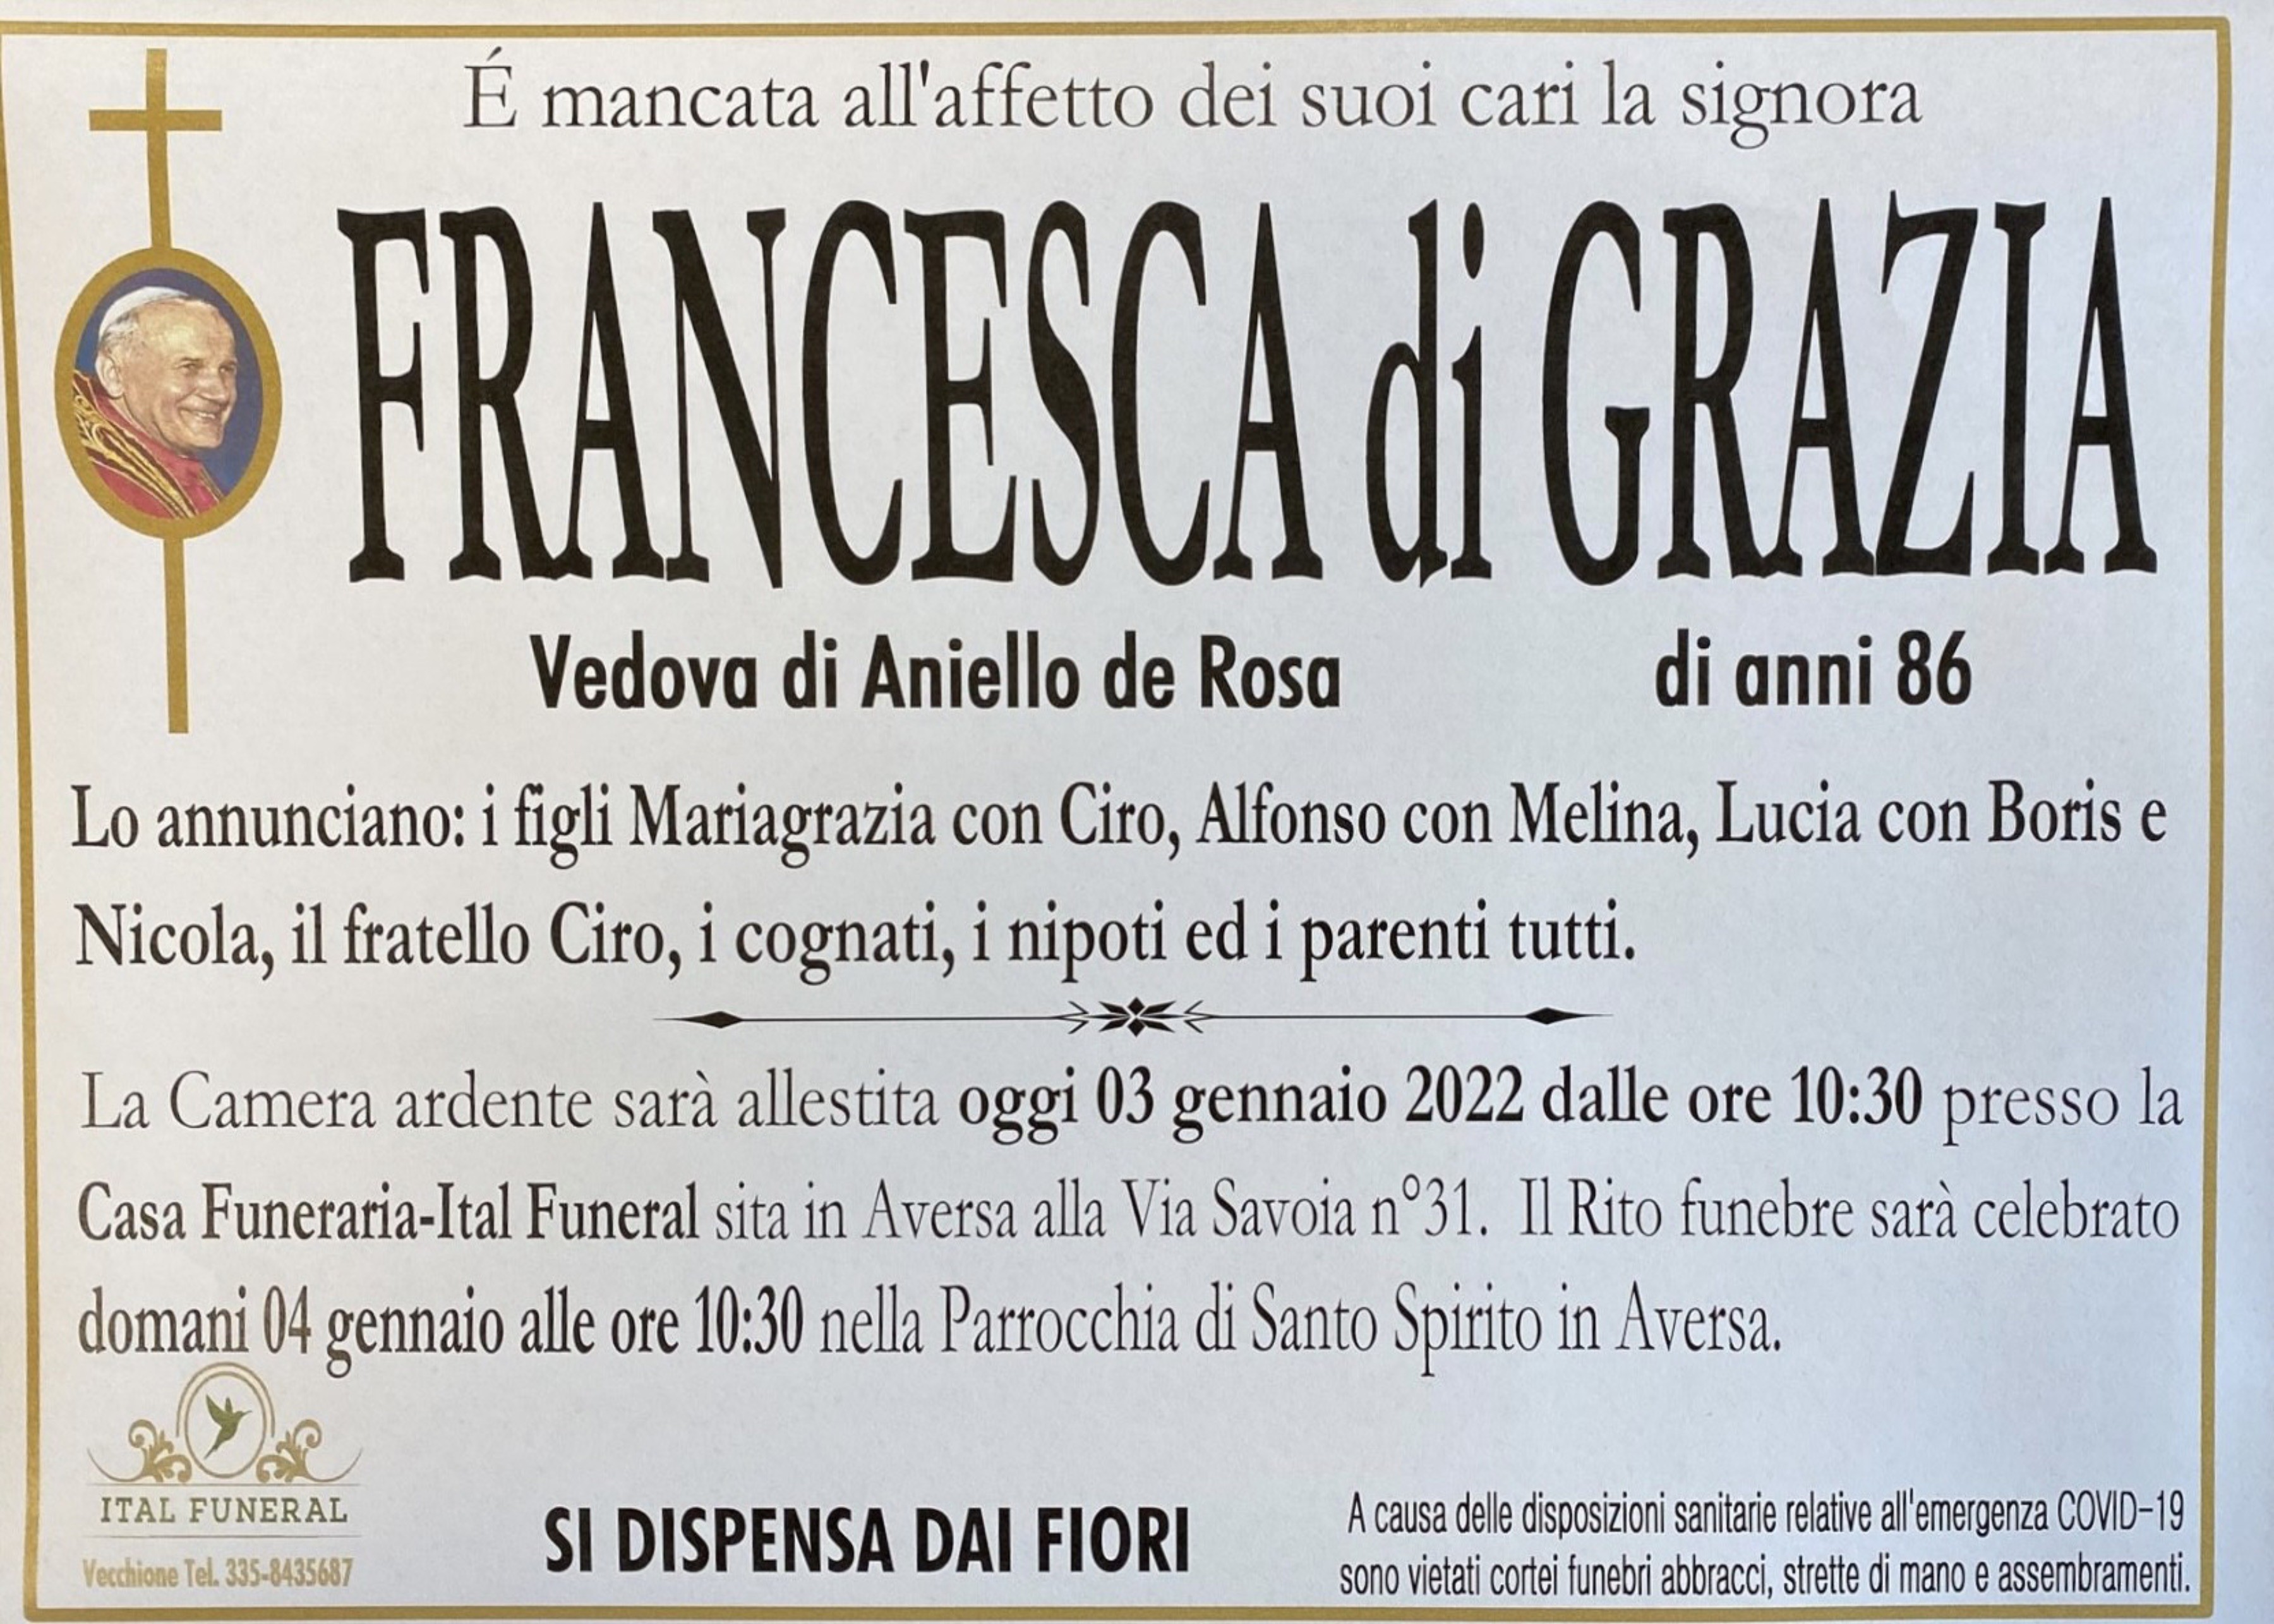 Francesca di Grazia